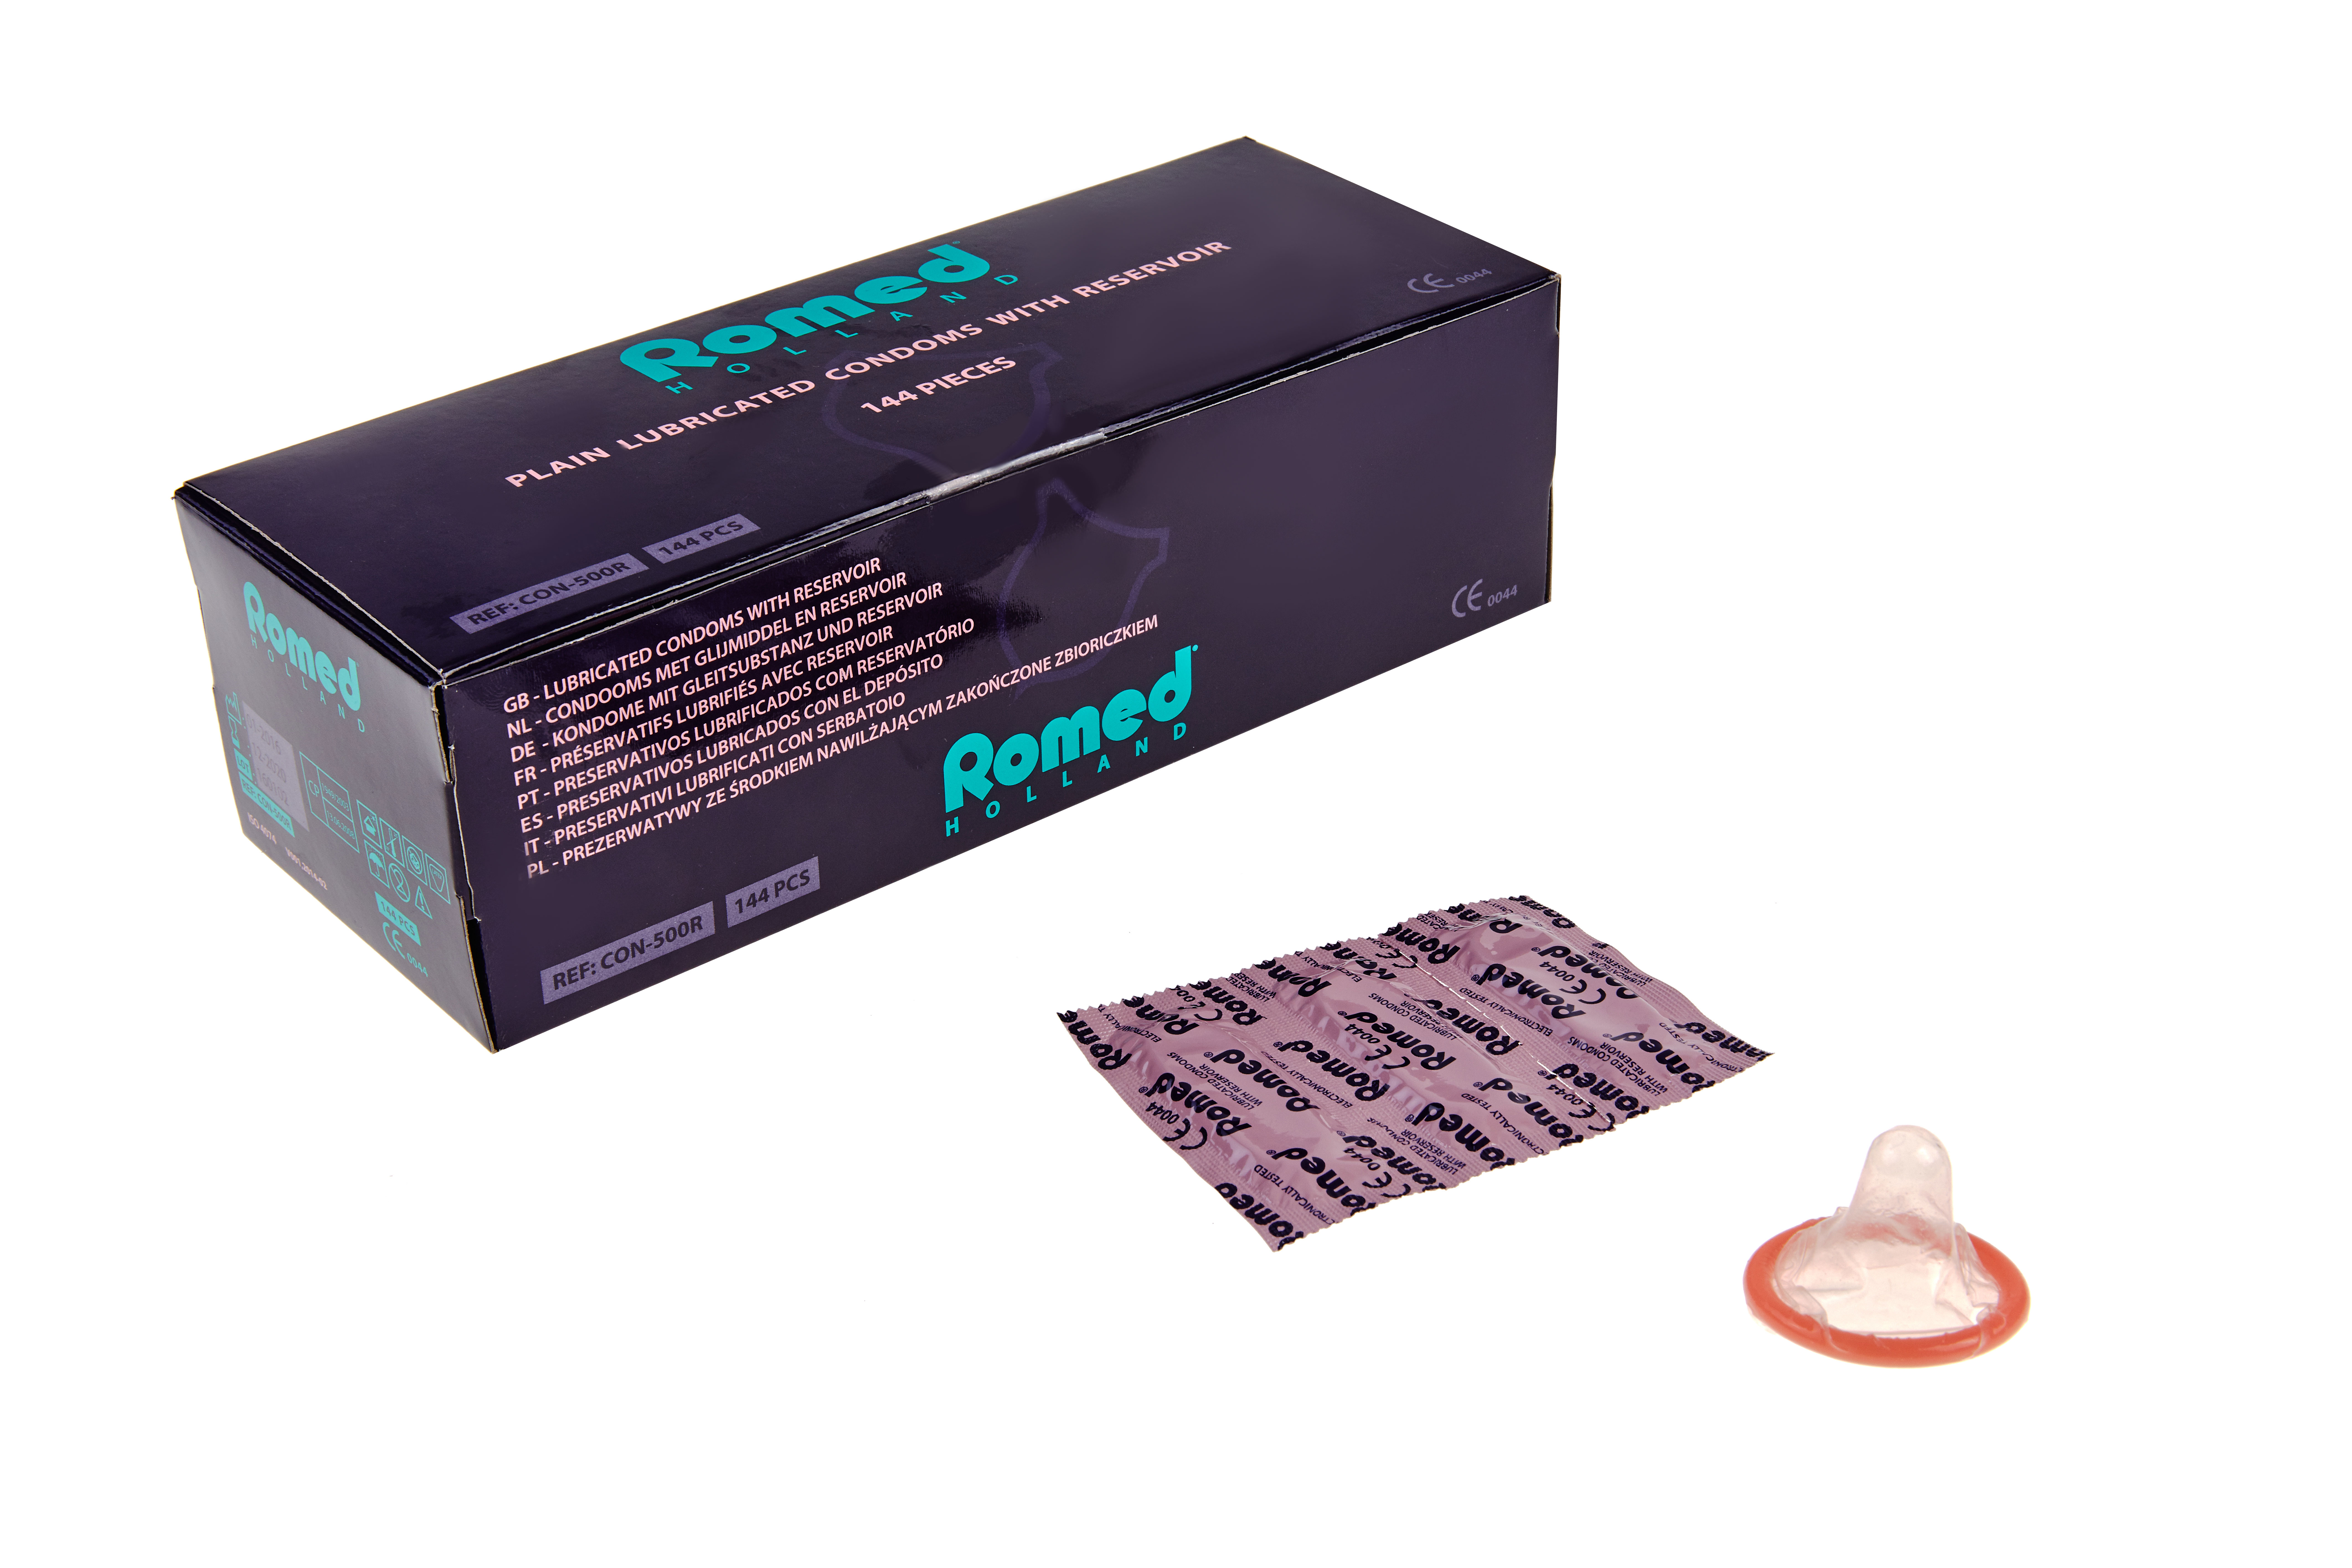 CON-500R Romed condooms verpakt in strips van 3 stuks, 48 strips van 3 stuks = 144 stuks in een binnendoosje (= 1 gros), 50 x 144 stuks = 7.200 stuks in een karton